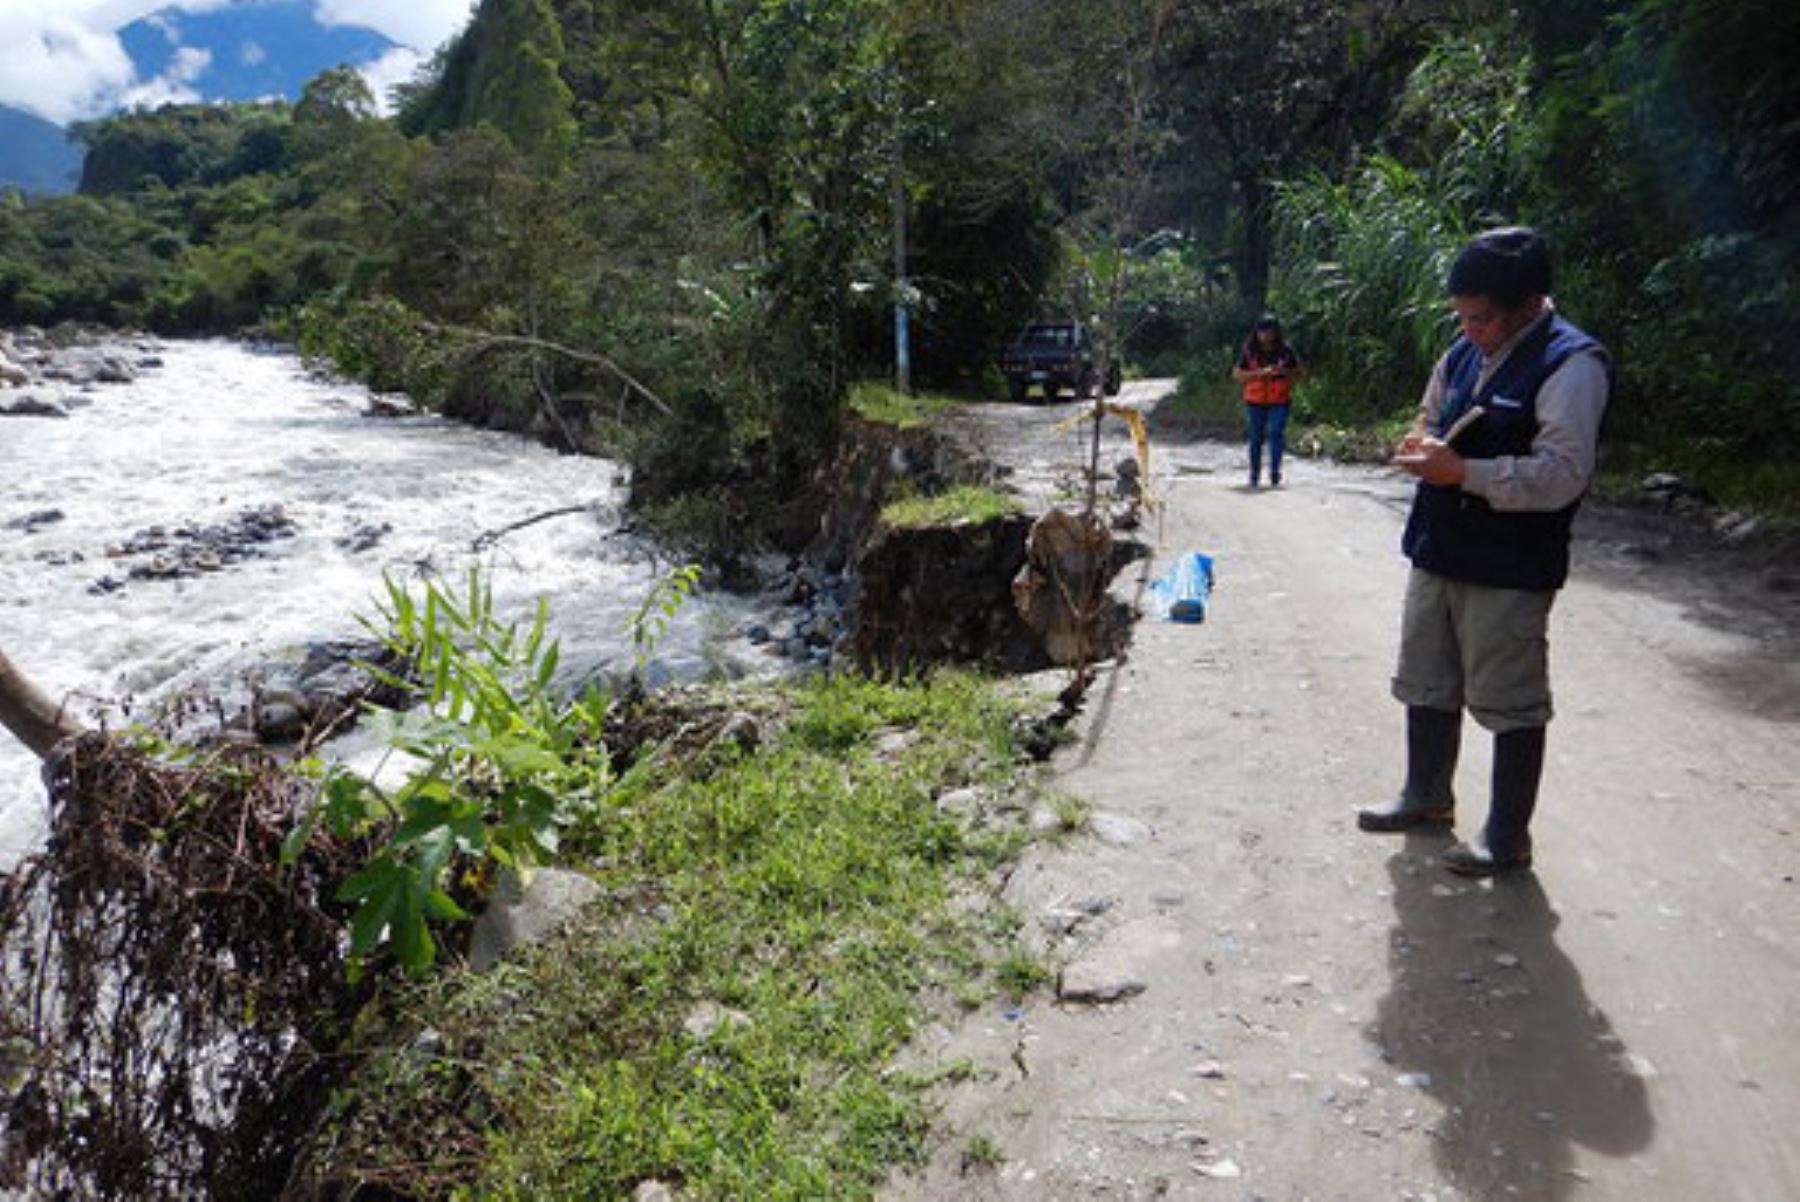 Especialistas del Ingemmet visitaron el distrito de Huayopata para hacer una evaluación de peligros geológicos de la zona afectada por un huaico en diciembre pasado.